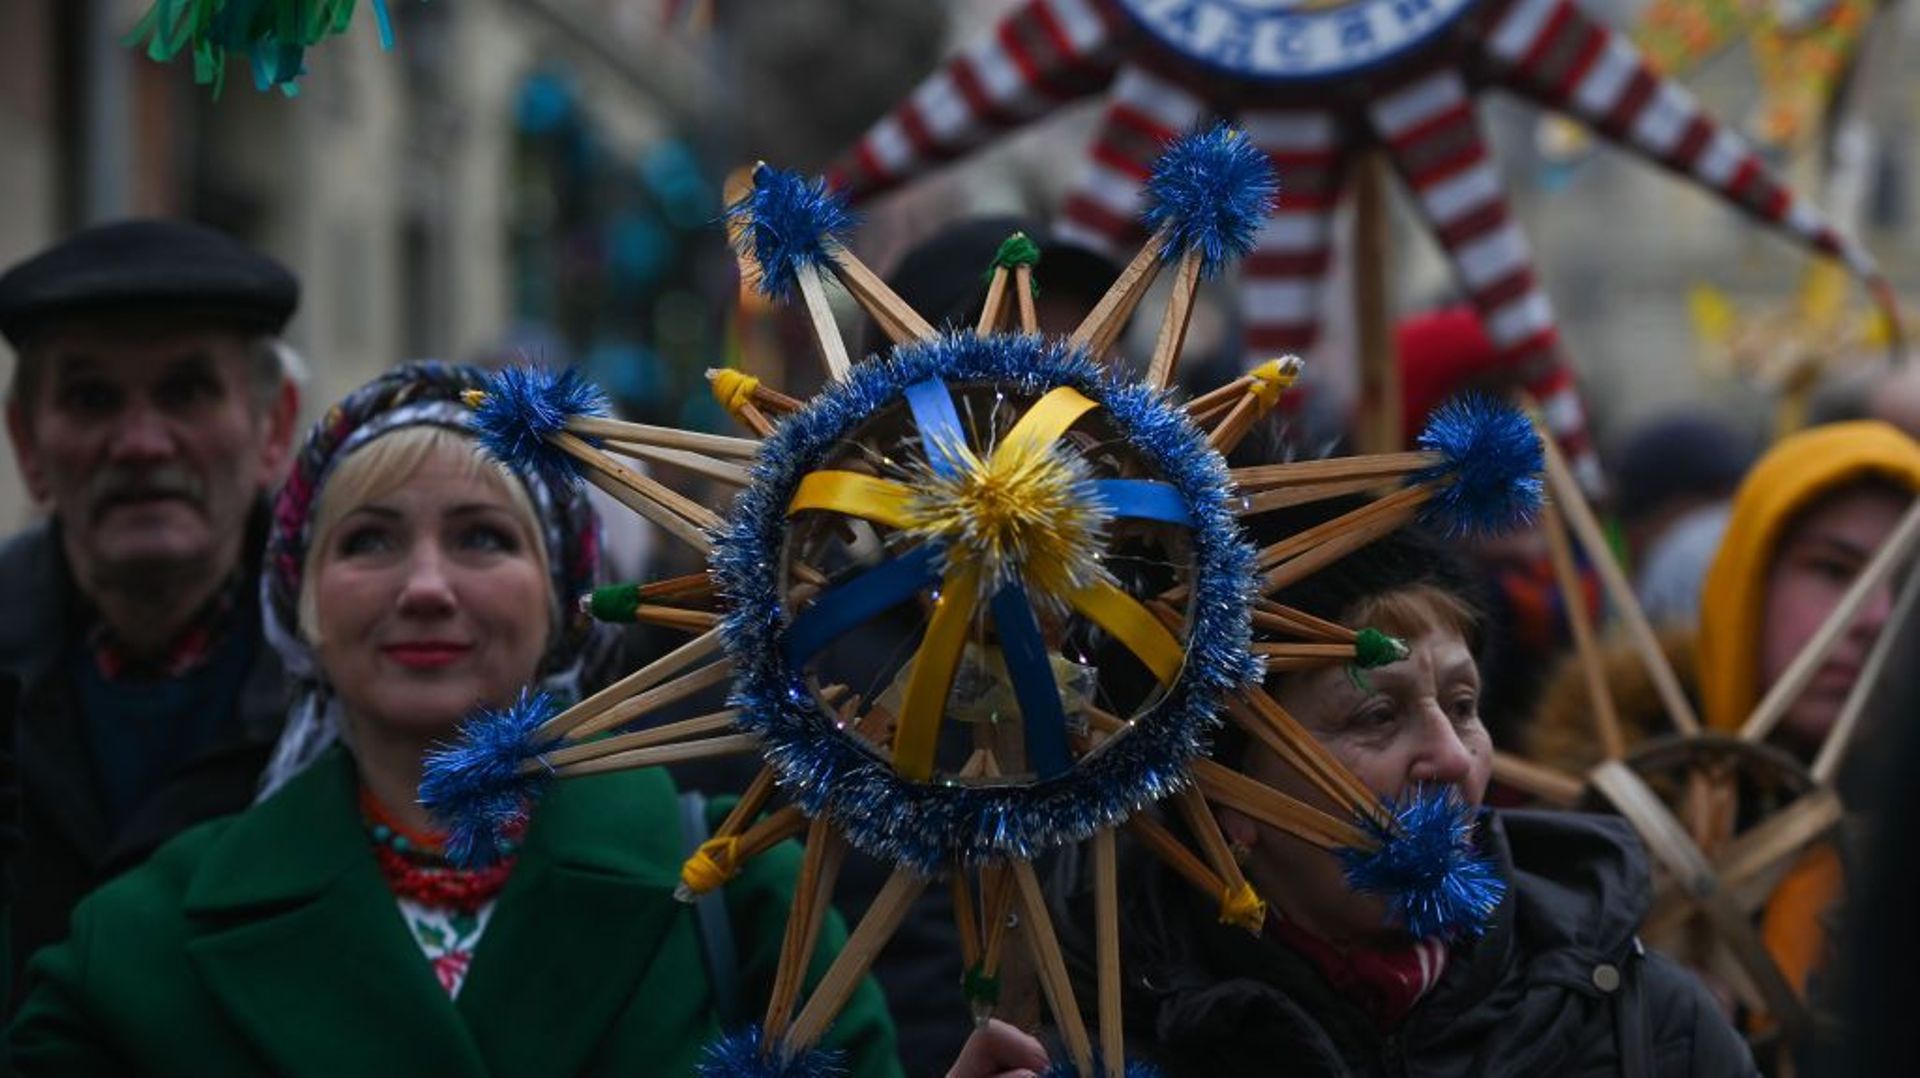 Christmas Stars Parade in Lviv